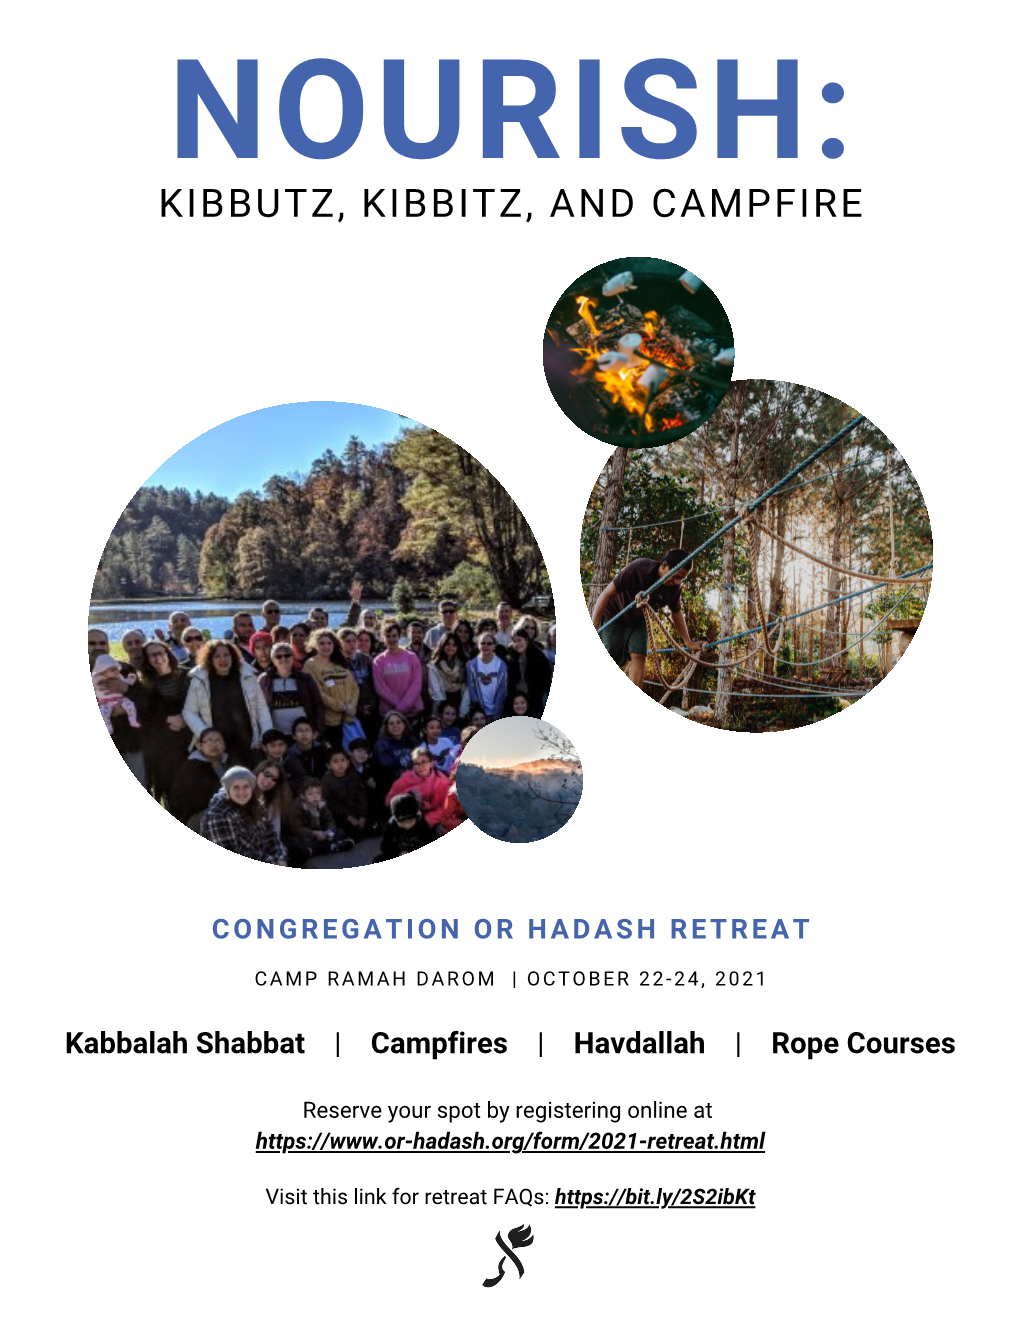 Kibbutz, Kibbitz, and Campfire